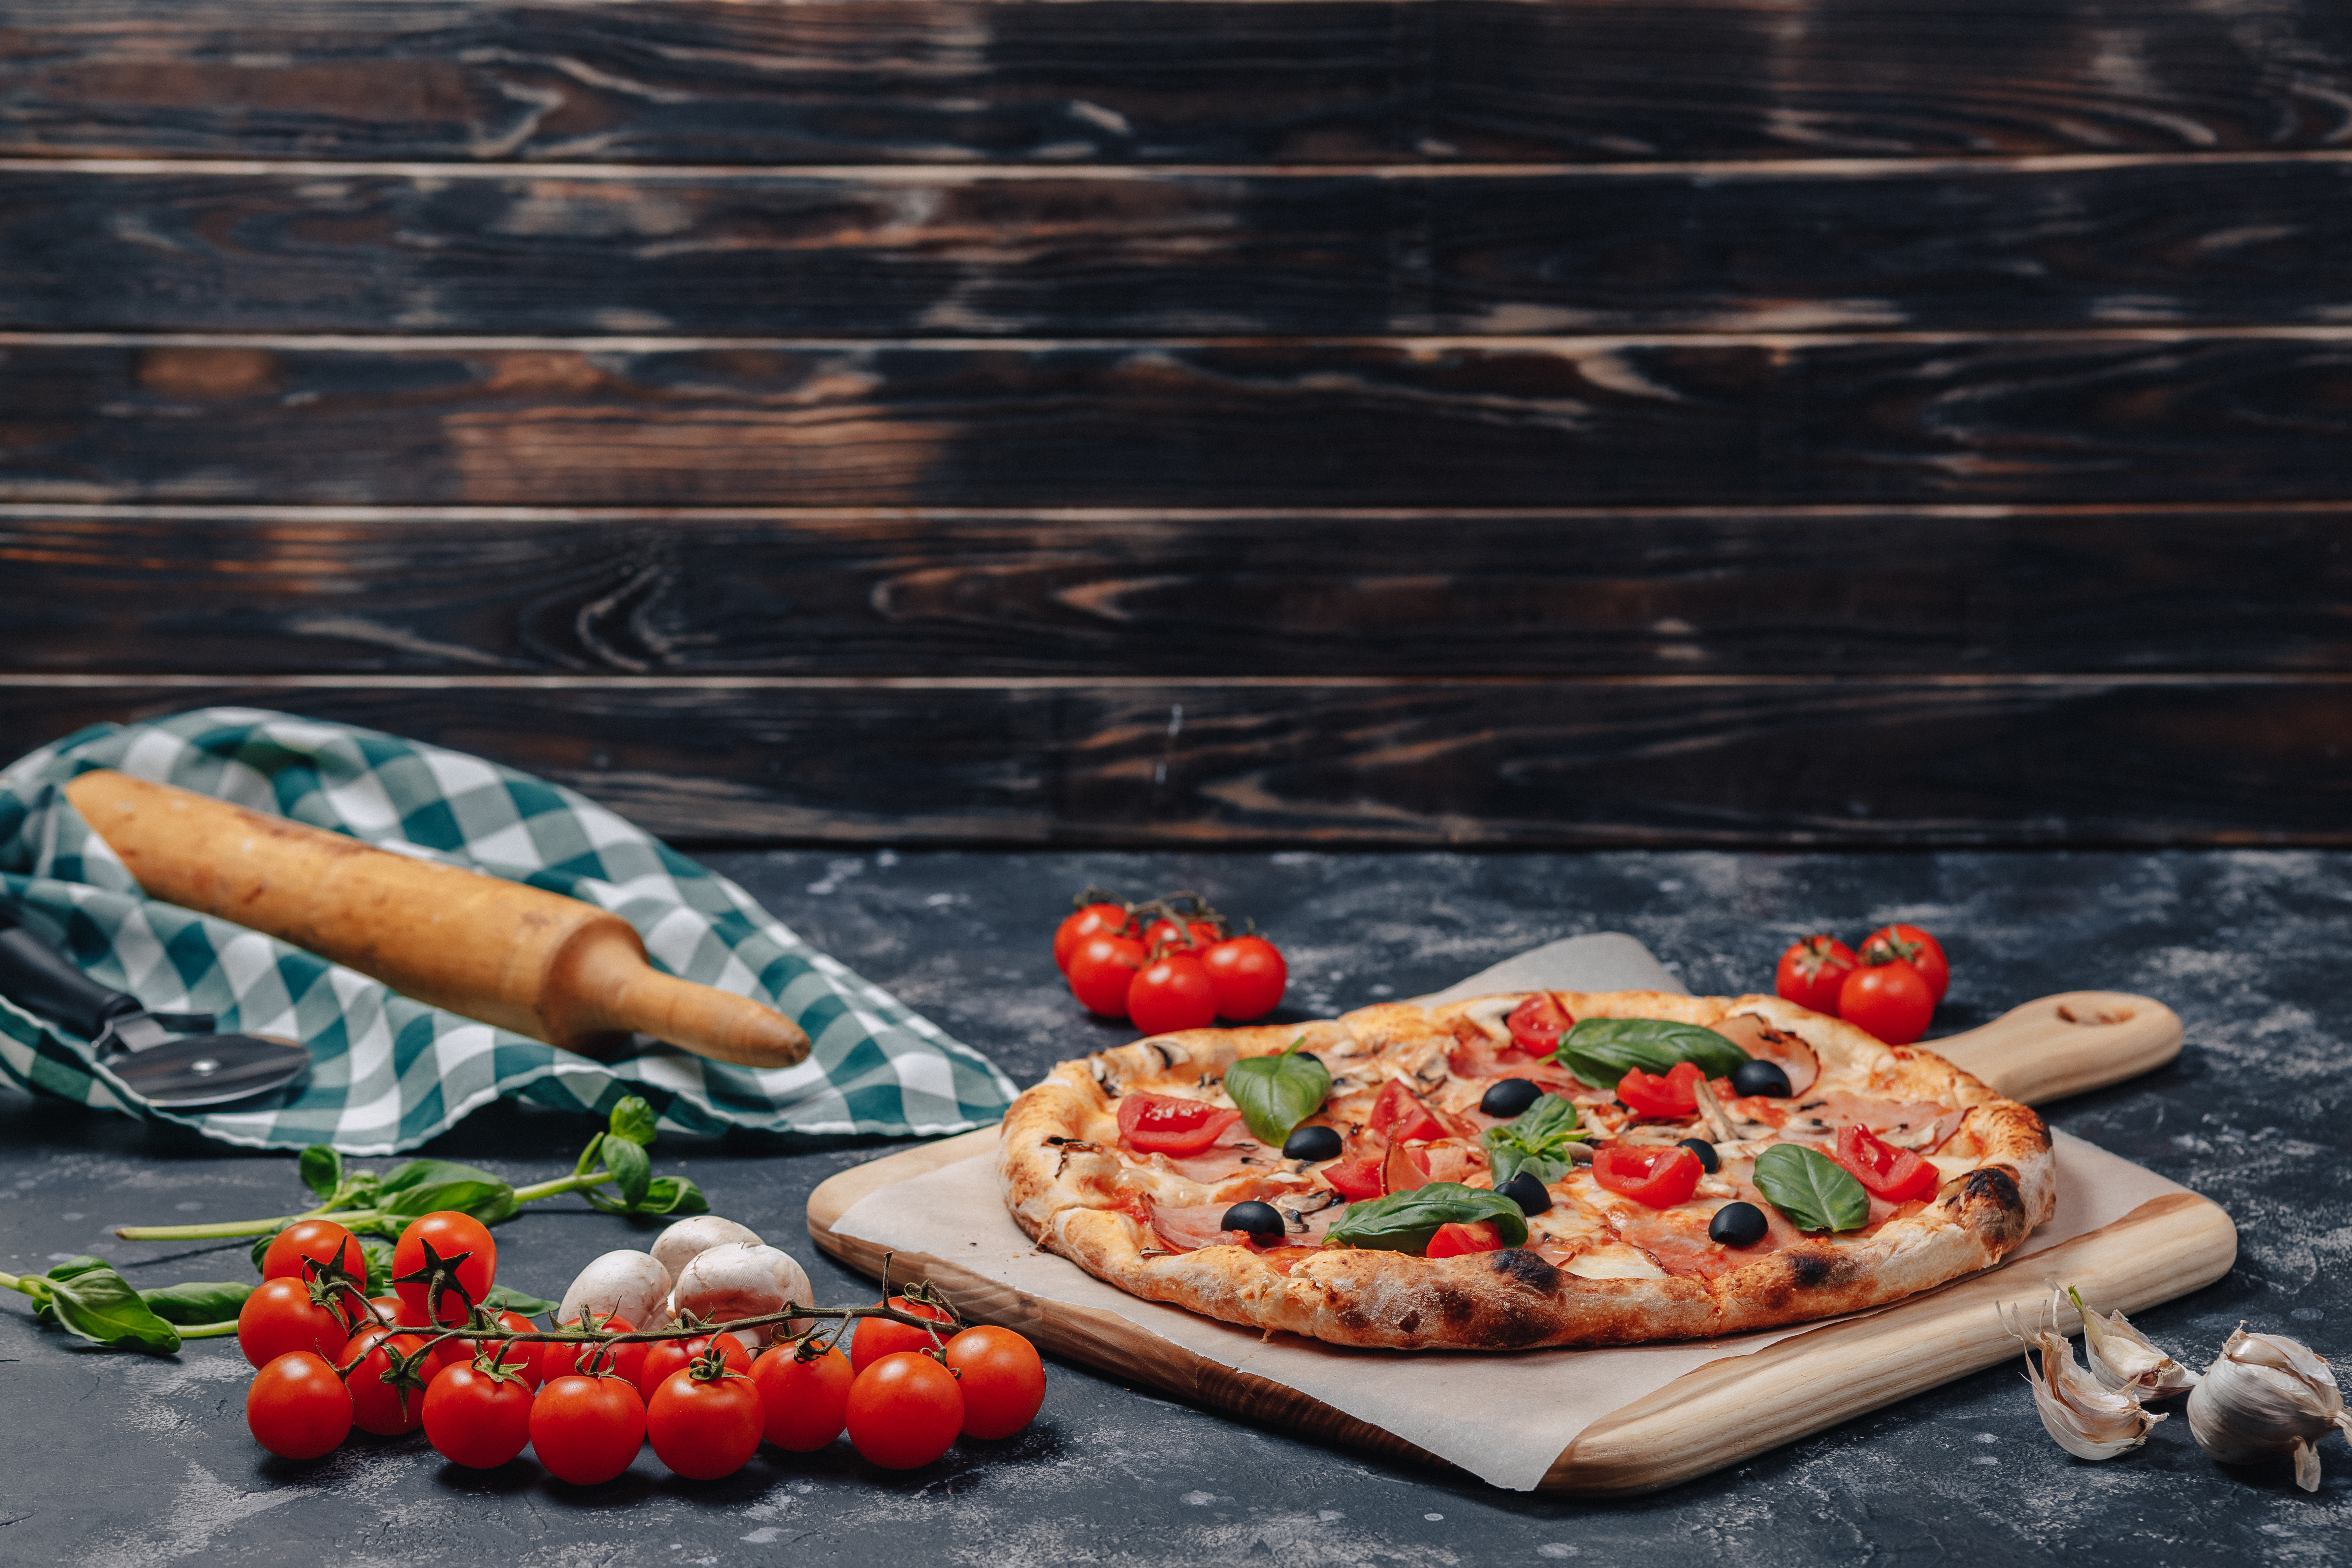 Nel capoluogo della pizza napoletana, la Margarita è stata creata in modo speciale: è stata utilizzata la bandiera italiana